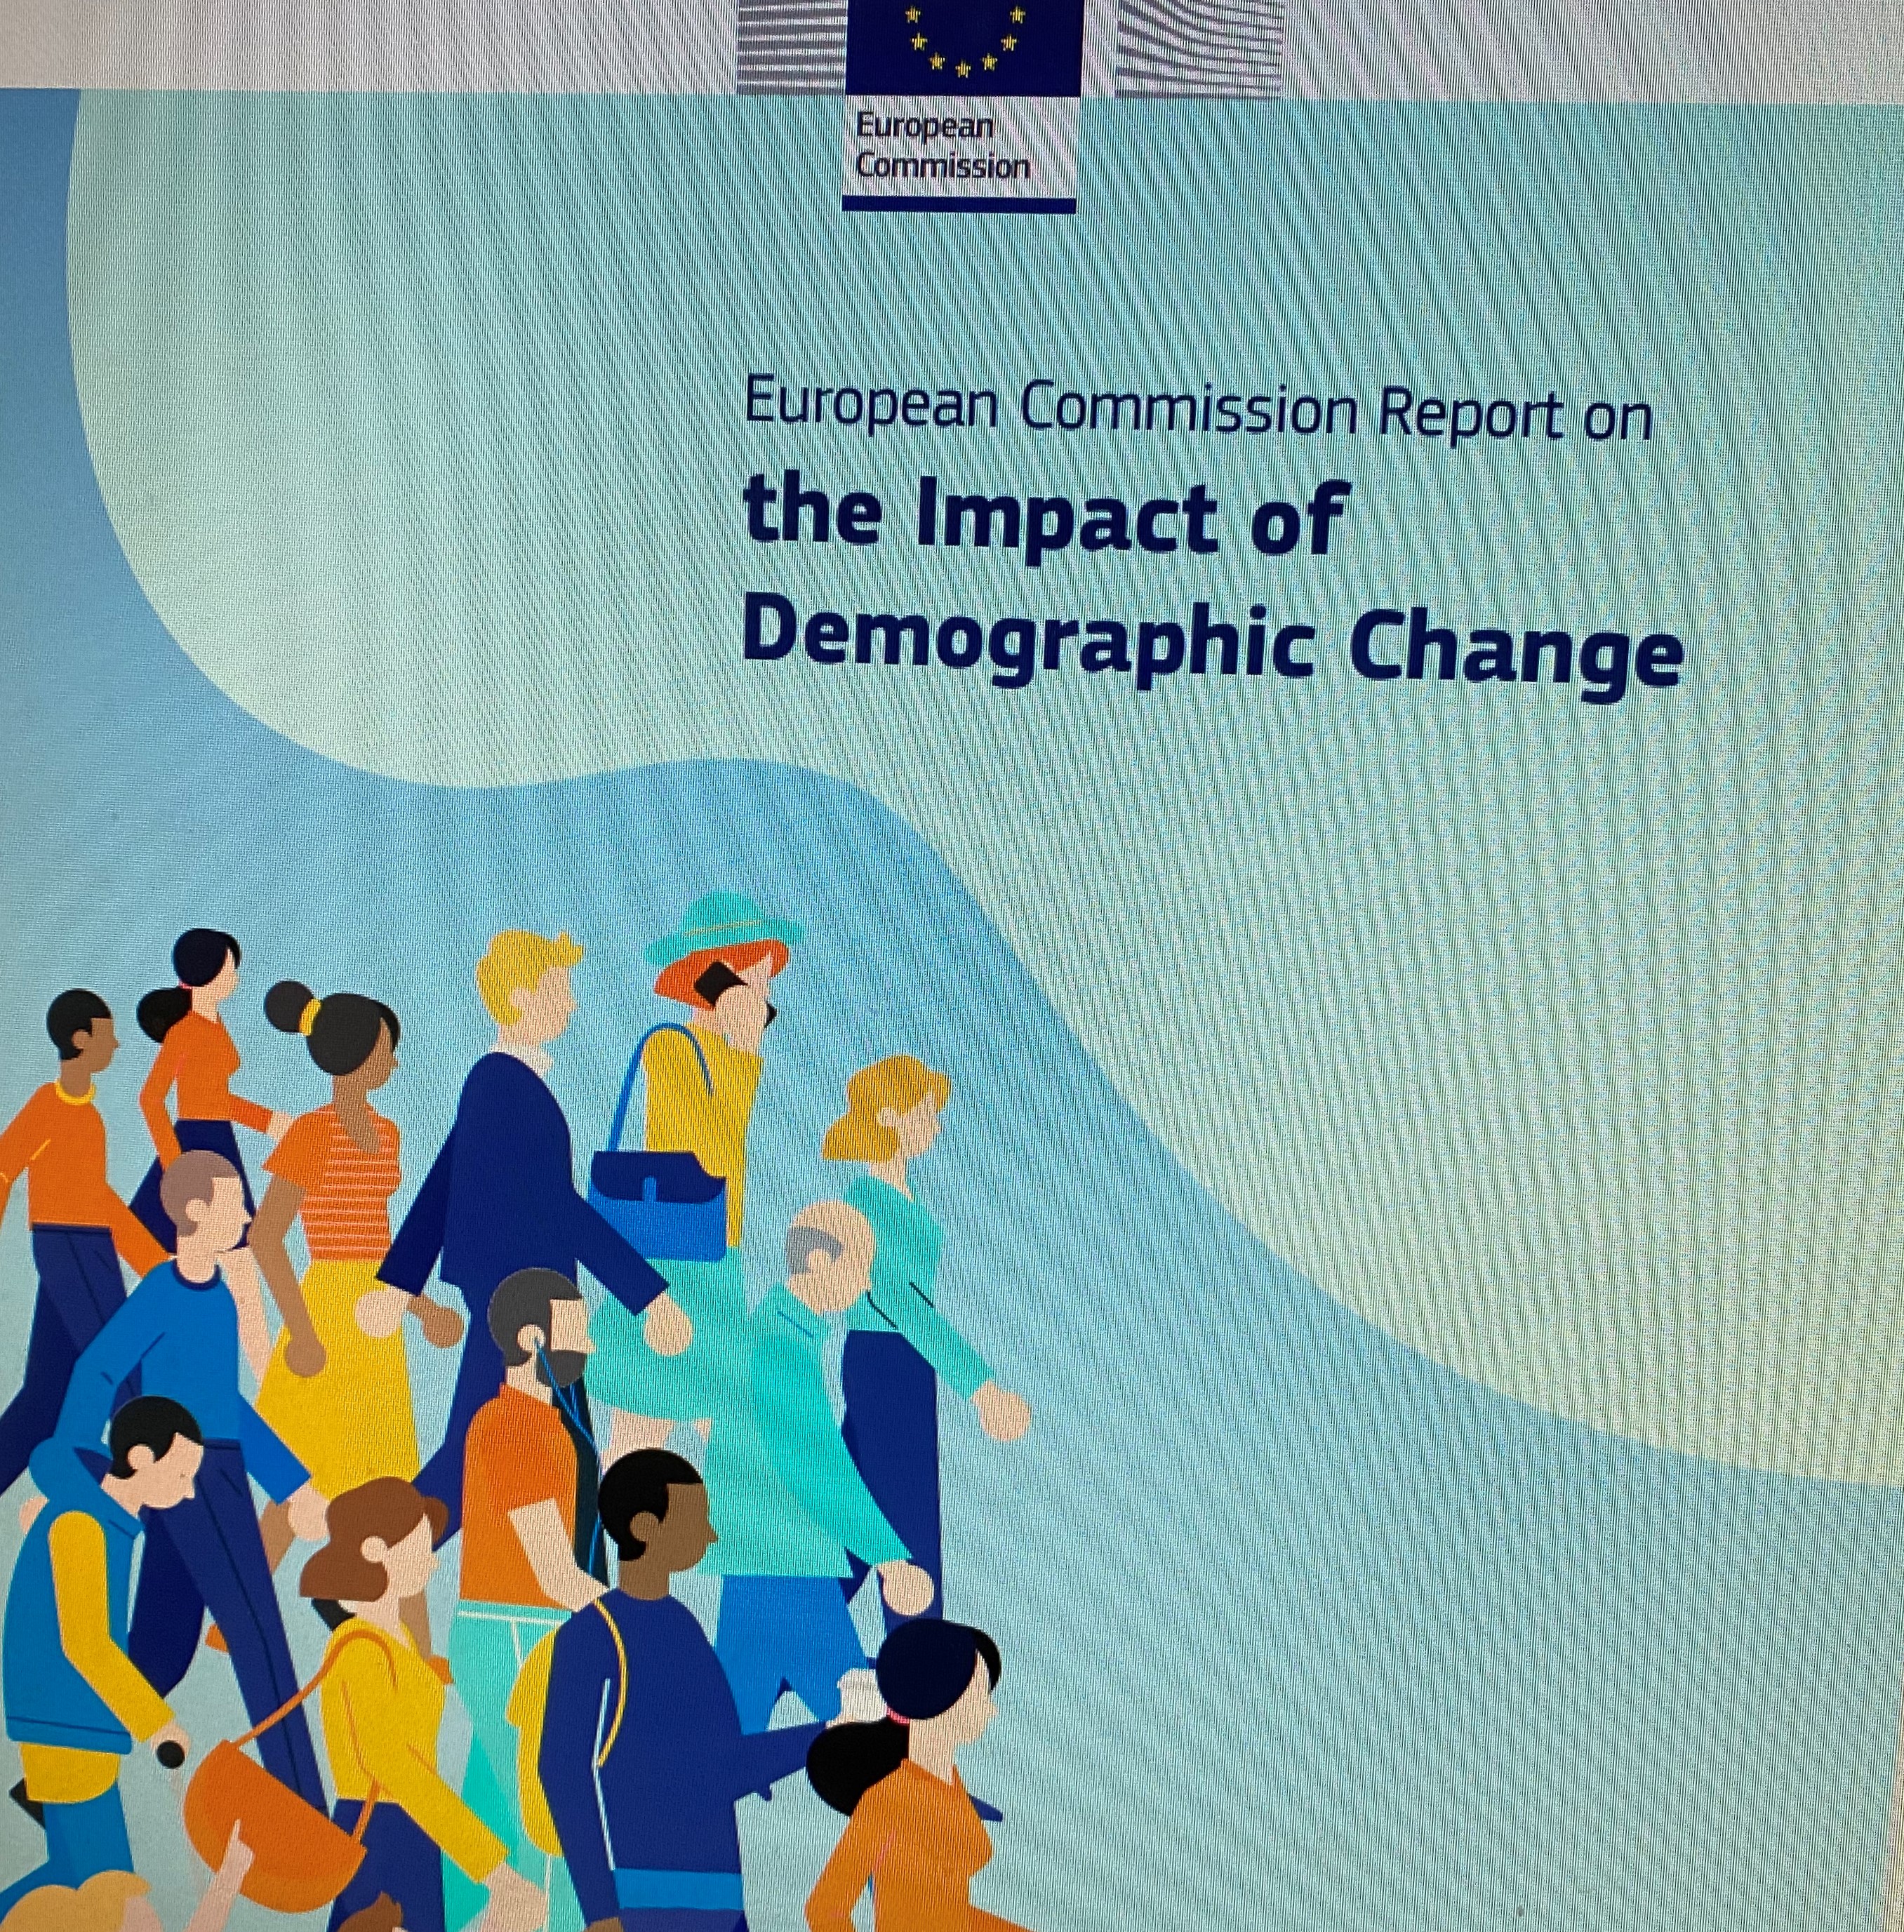 L’impatto del cambiamento demografico in Europa